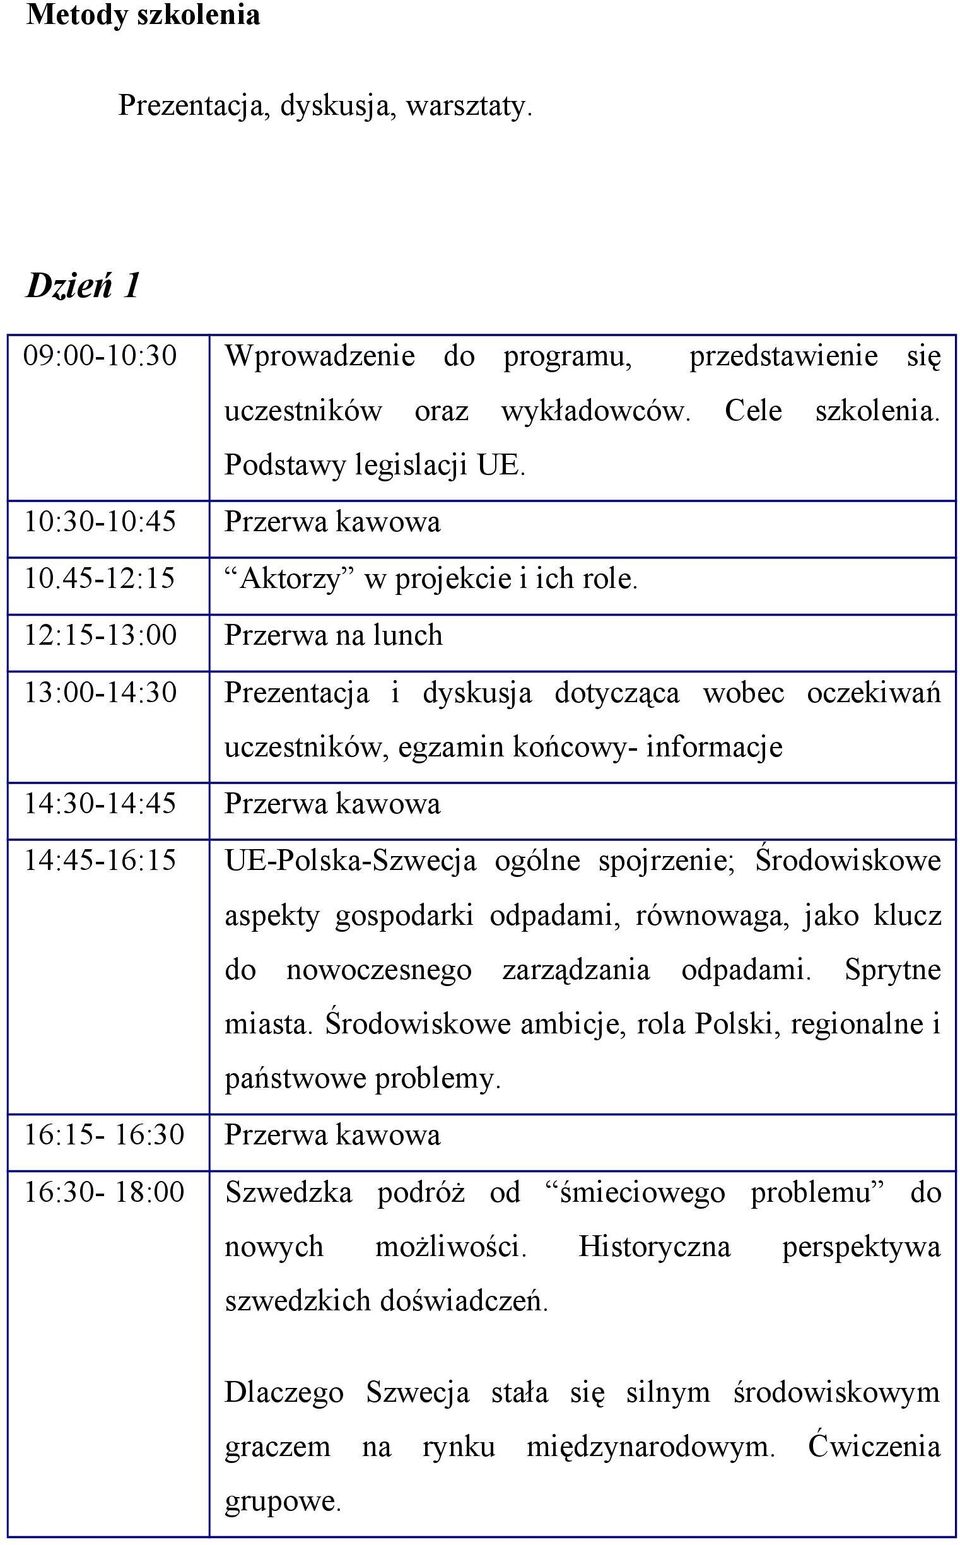 13:00-14:30 Prezentacja i dyskusja dotycząca wobec oczekiwań uczestników, egzamin końcowy- informacje 14:45-16:15 UE-Polska-Szwecja ogólne spojrzenie; Środowiskowe aspekty gospodarki odpadami,